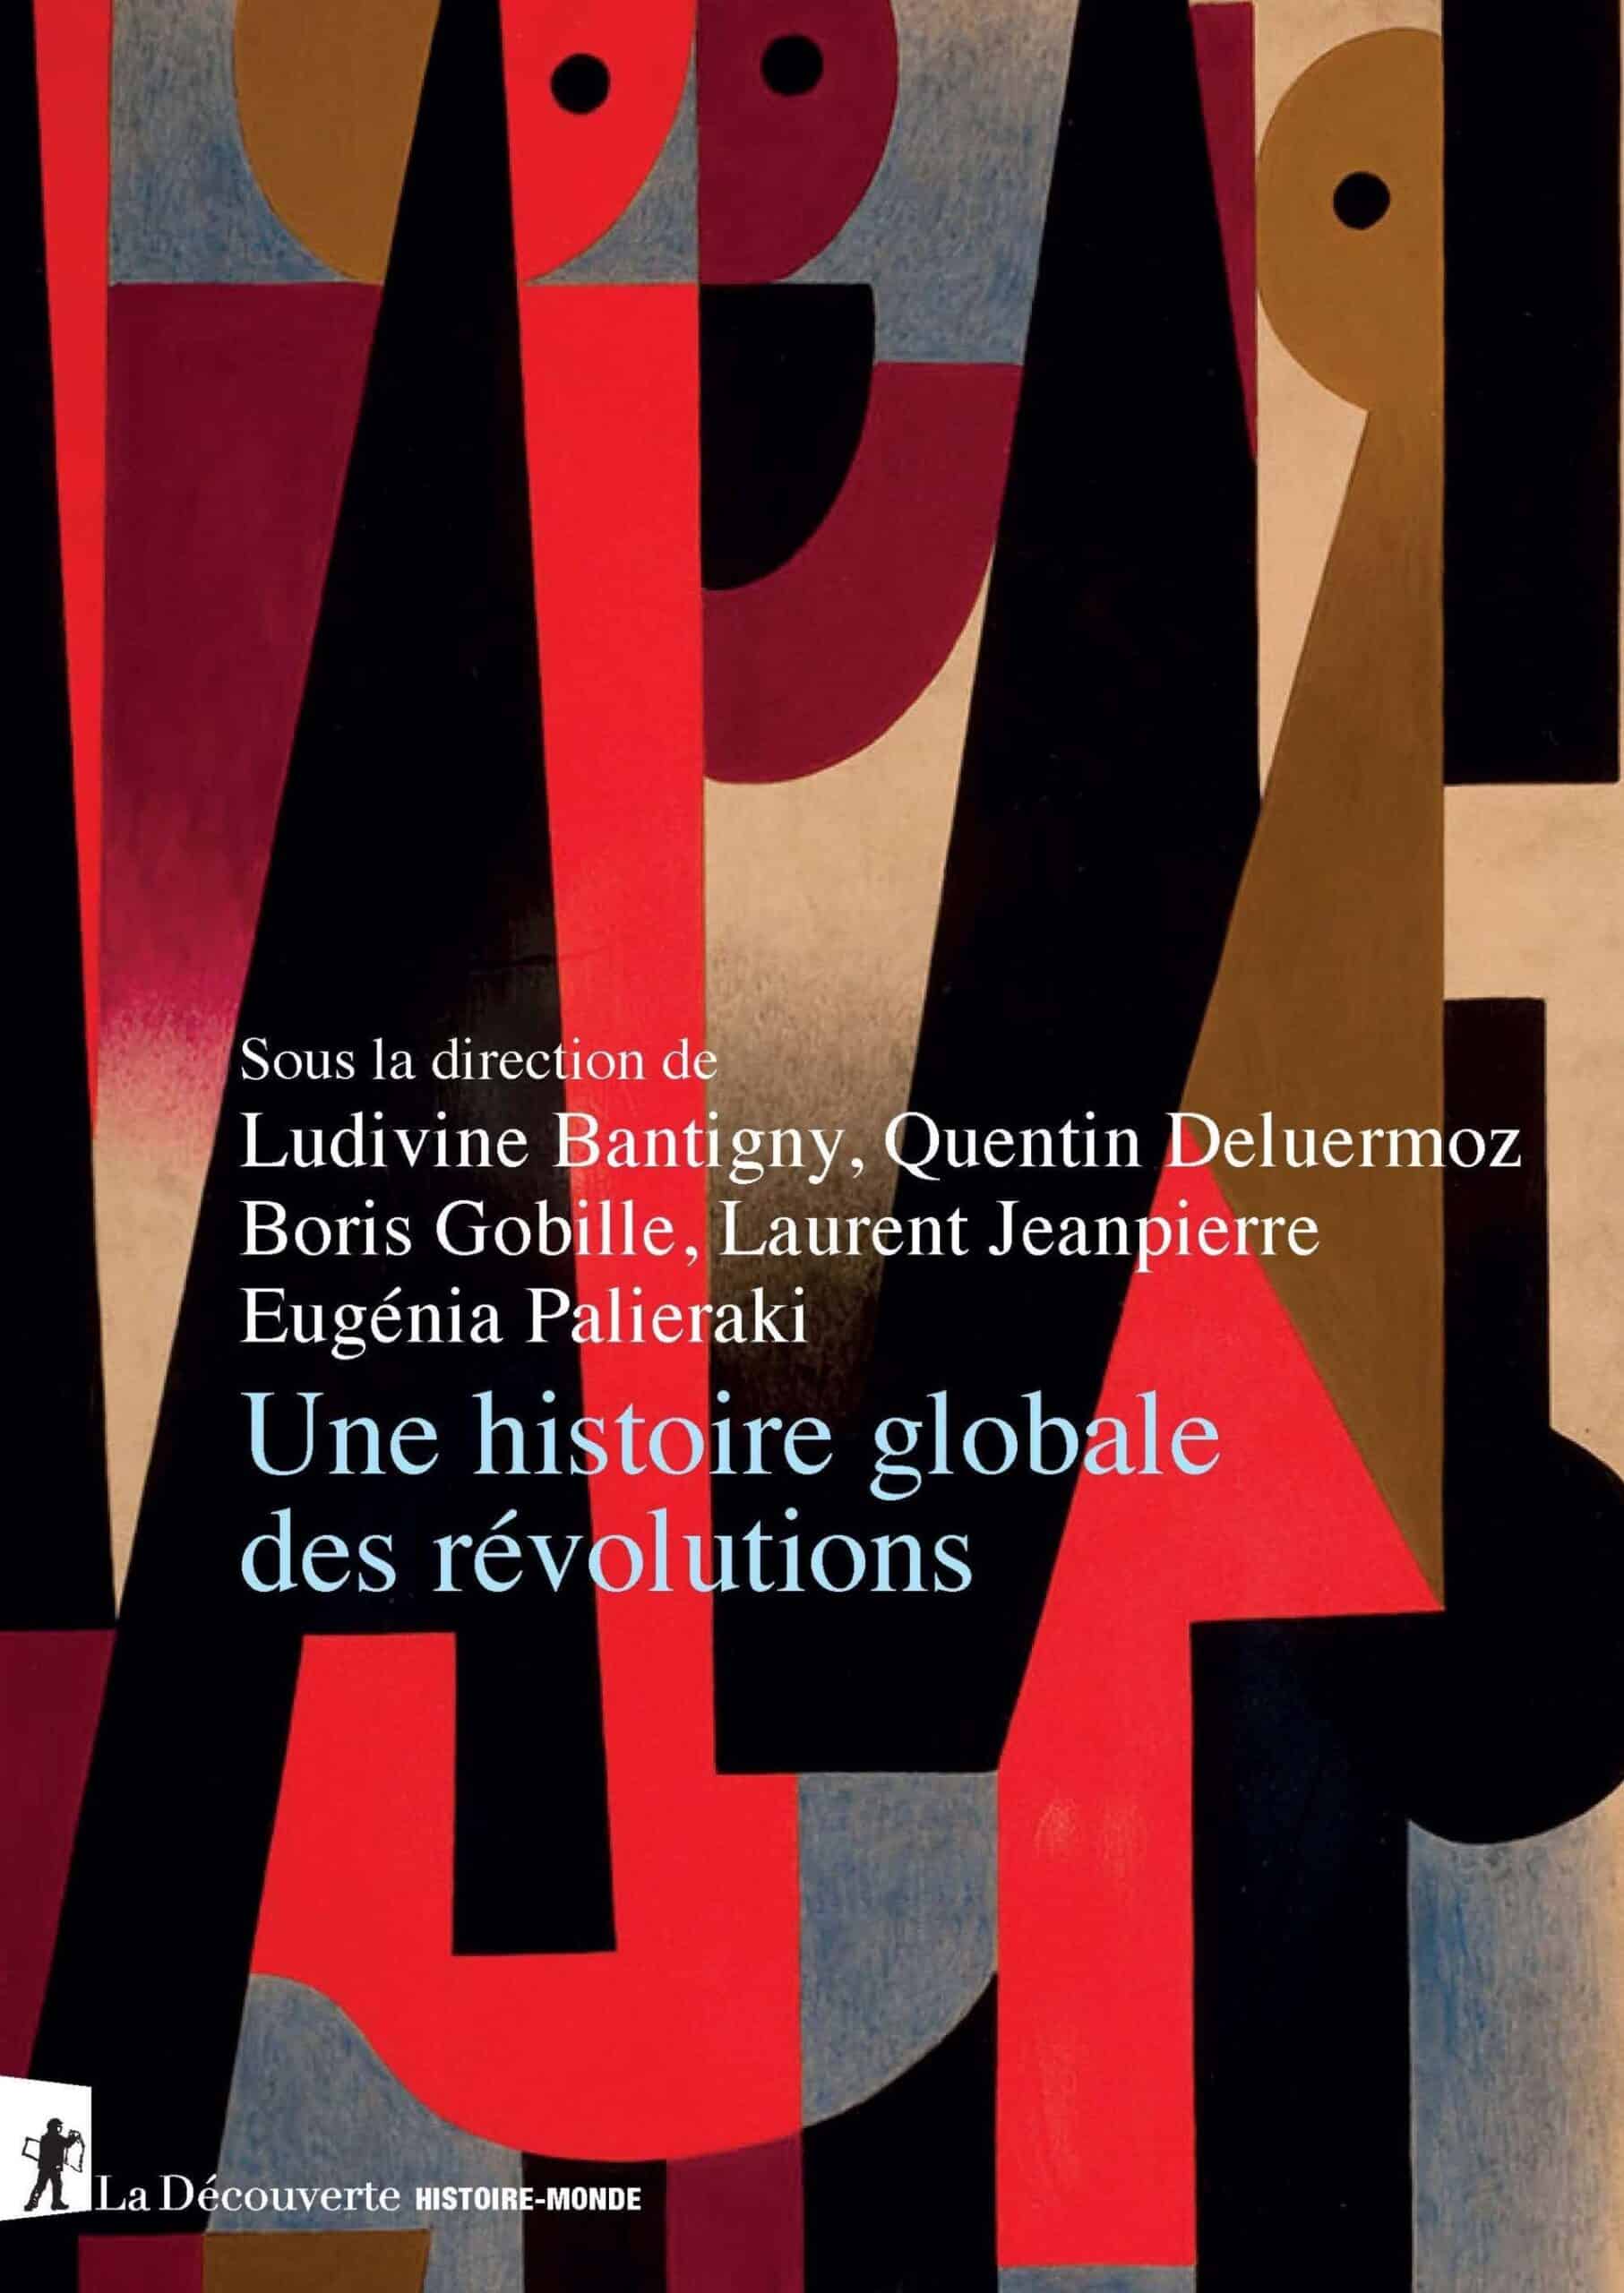 Une Histoire globale des révolutions, sous la direction de Ludivine Bantigny, Quentin Deluermoz, Boris Gobille, Laurent Jeanpierre, Eugénia Palieraki, Paris, La Découverte